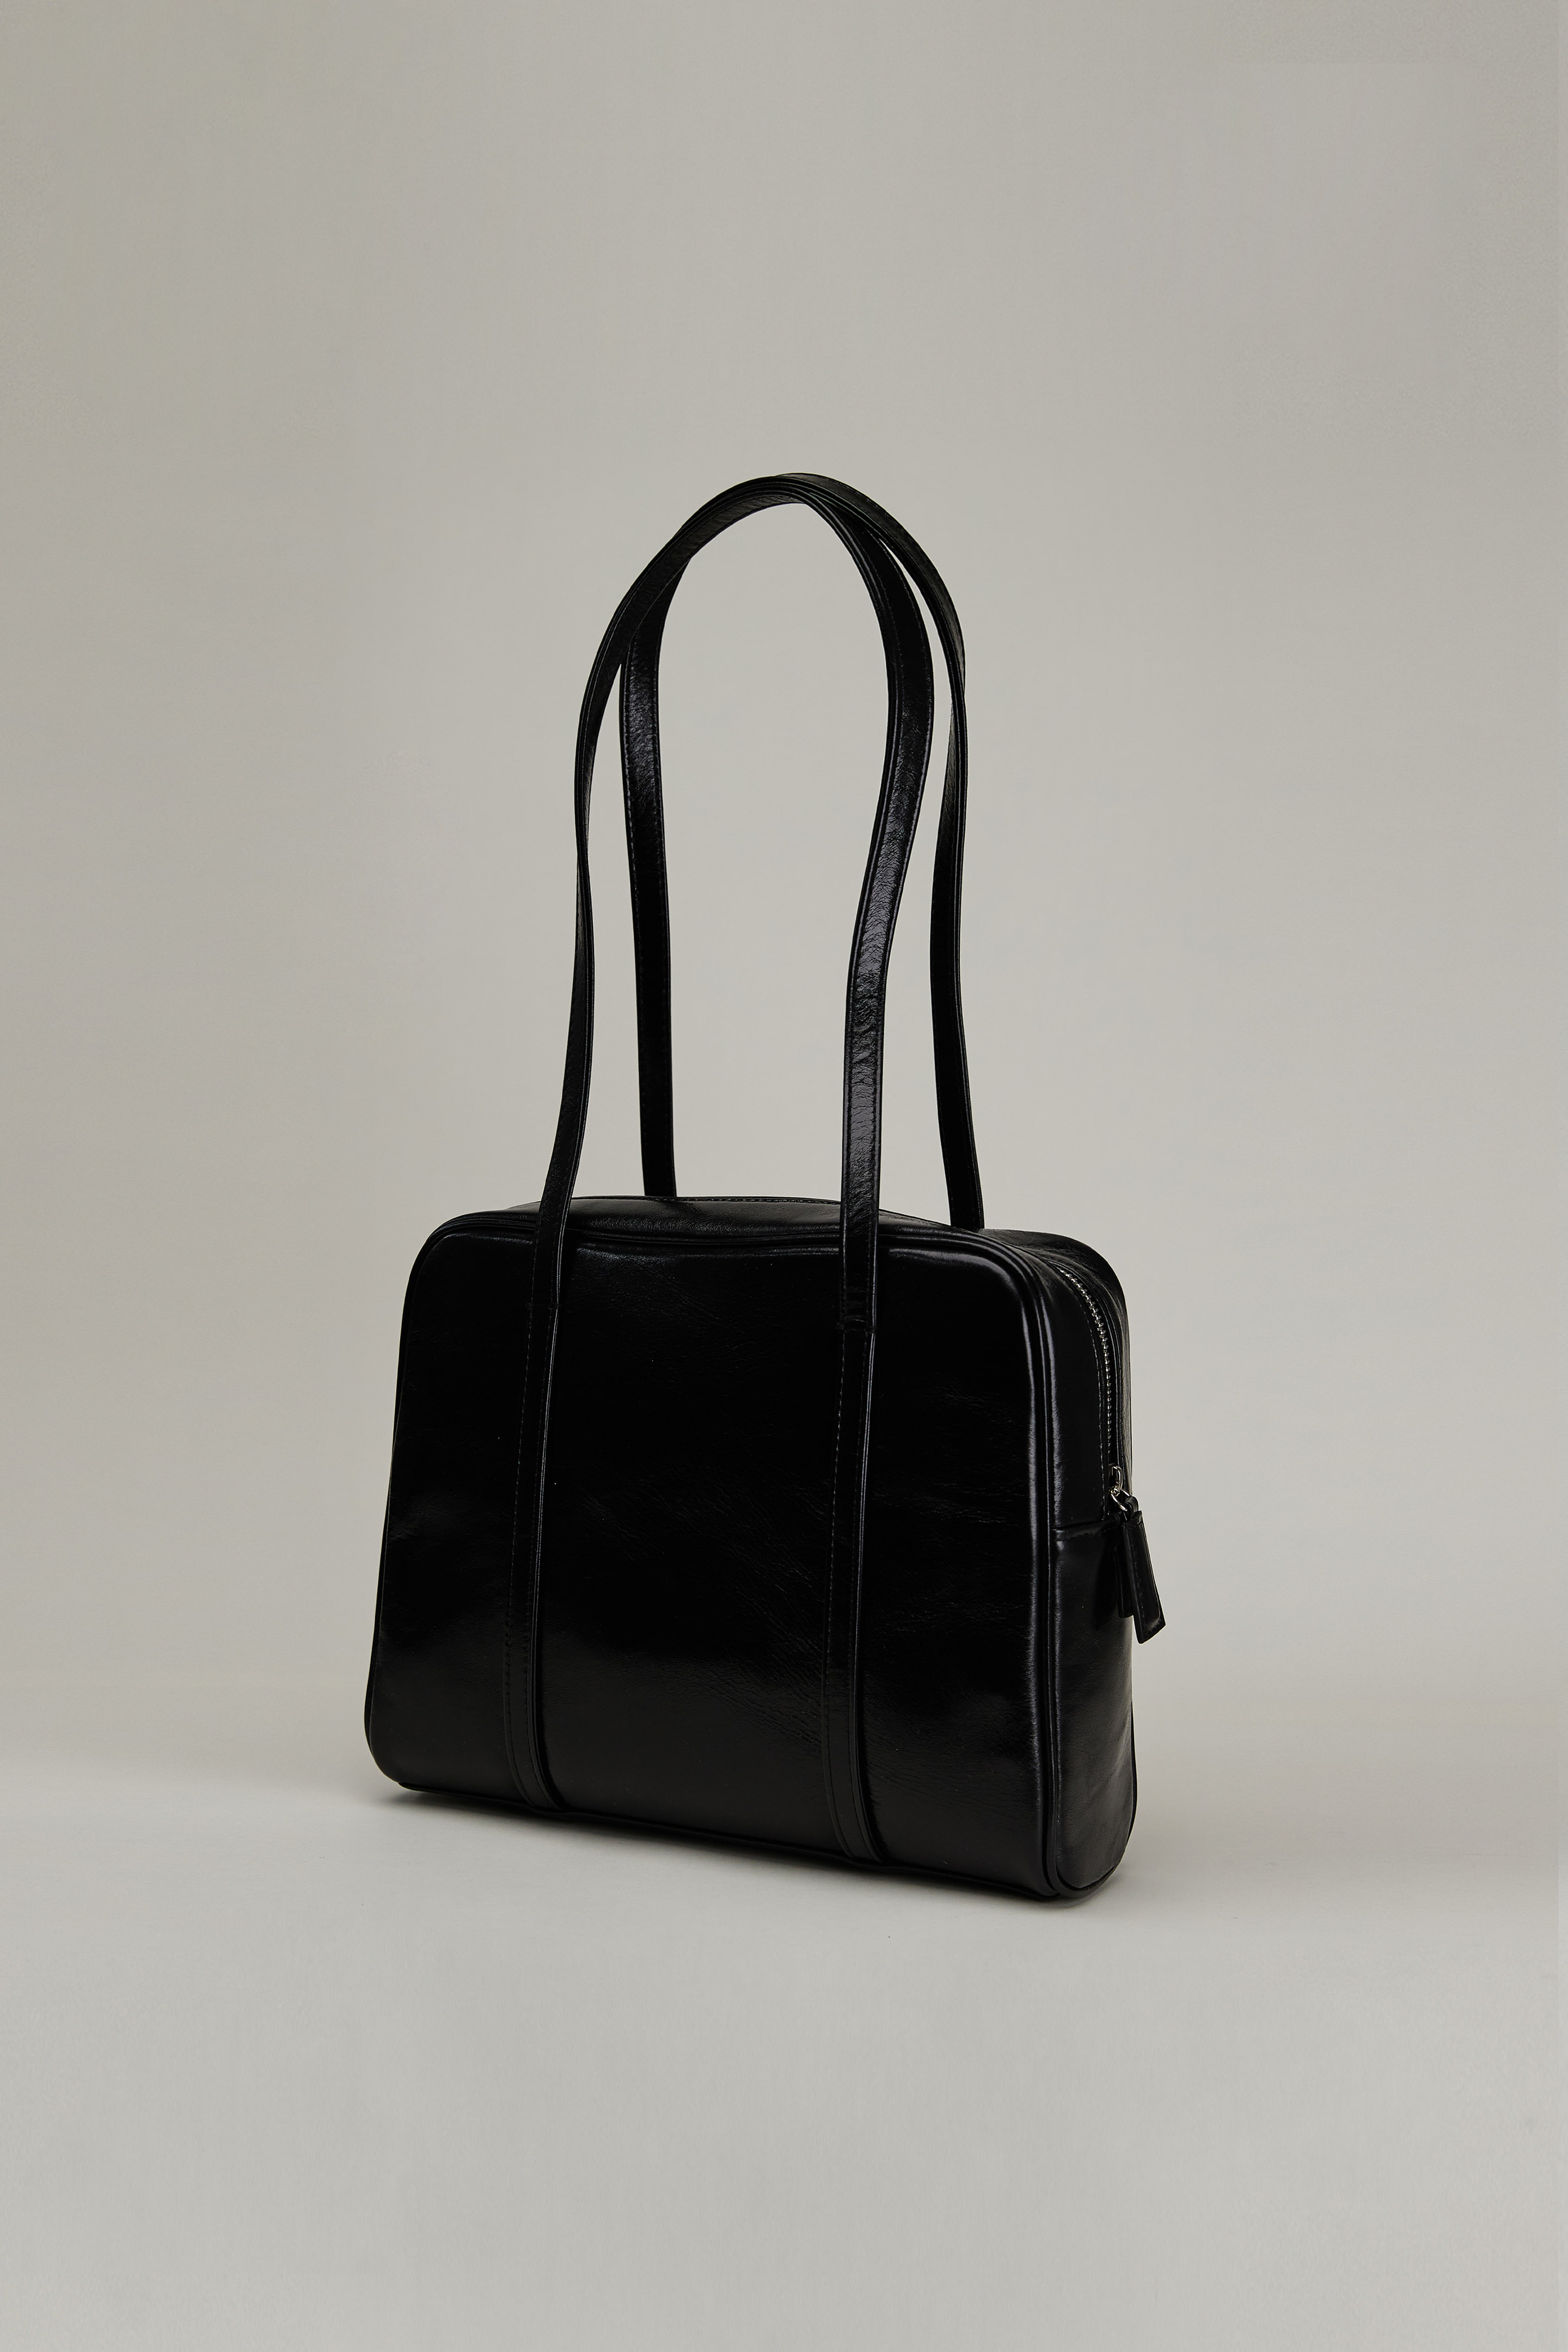 5th) Boyy Bag Shoulder Strap Black [08.08(MON)10:00-08.16(TUE)09:00]